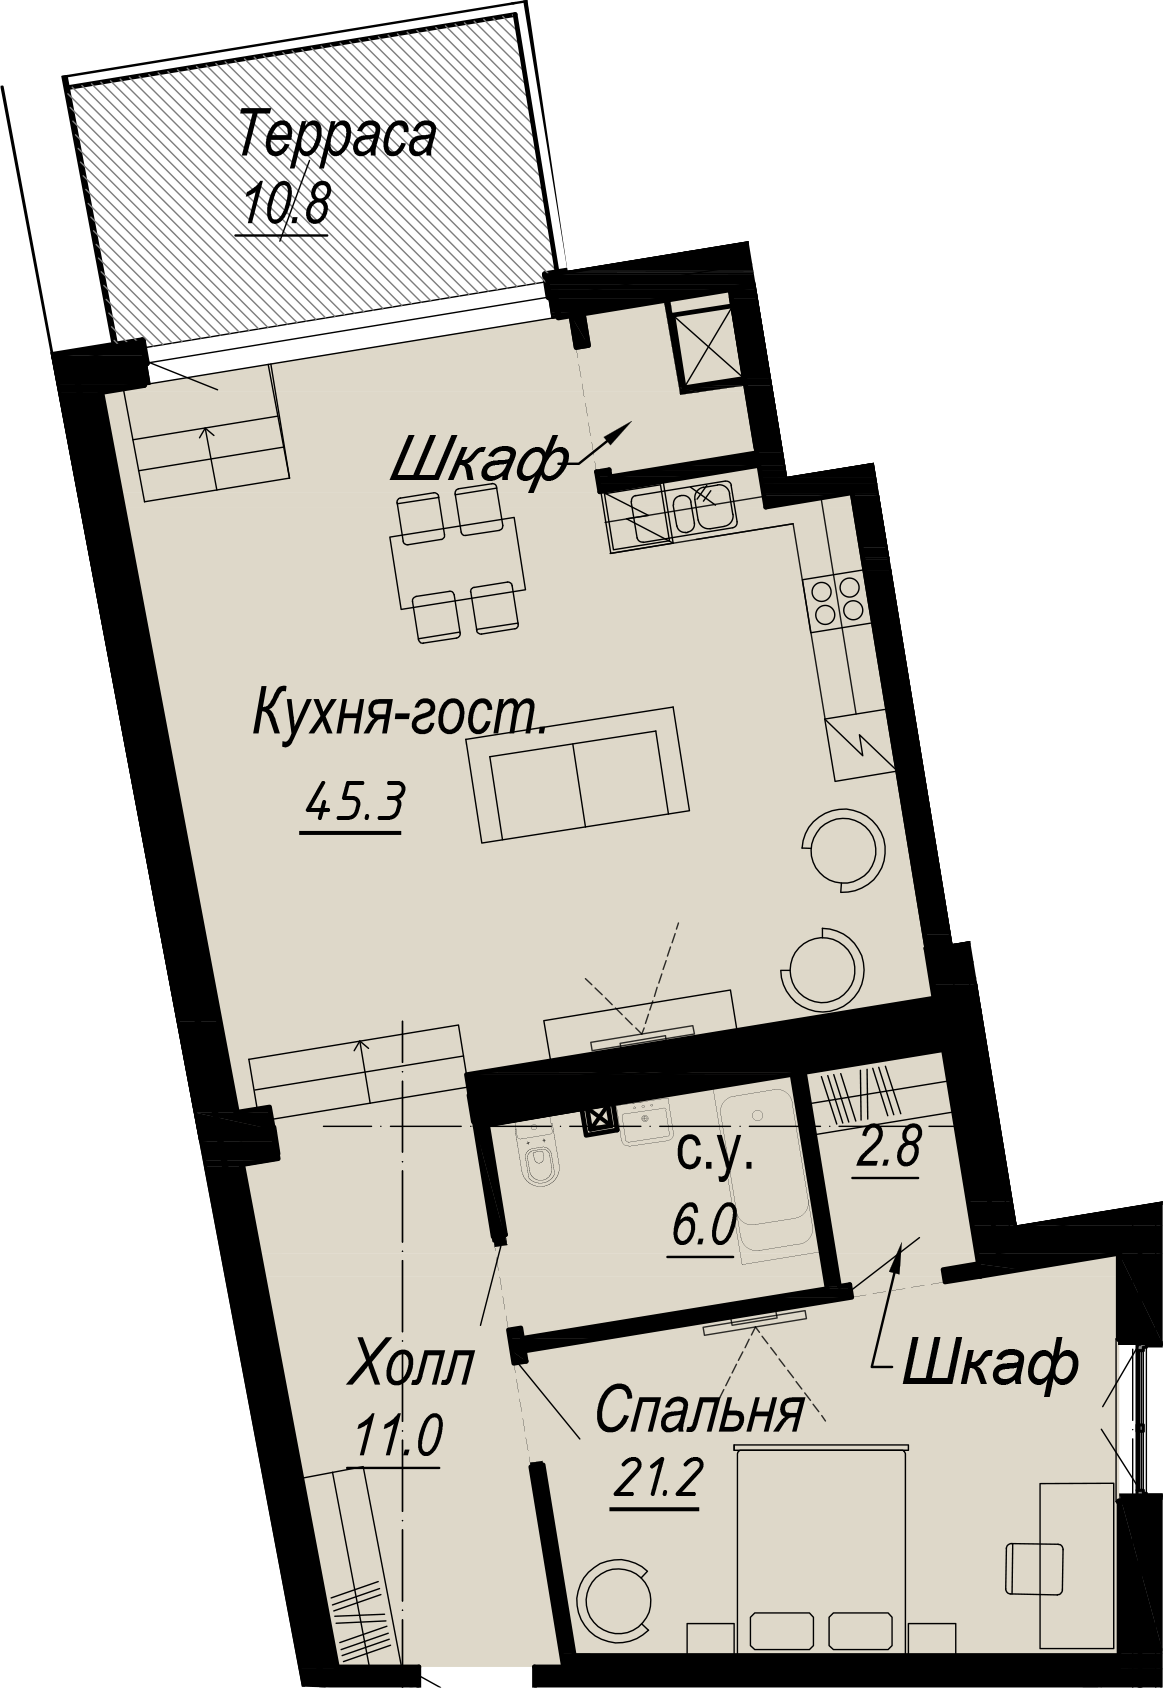 1-комнатная квартира  №15-6 в Meltzer Hall: 91.7 м², этаж 6 - купить в Санкт-Петербурге